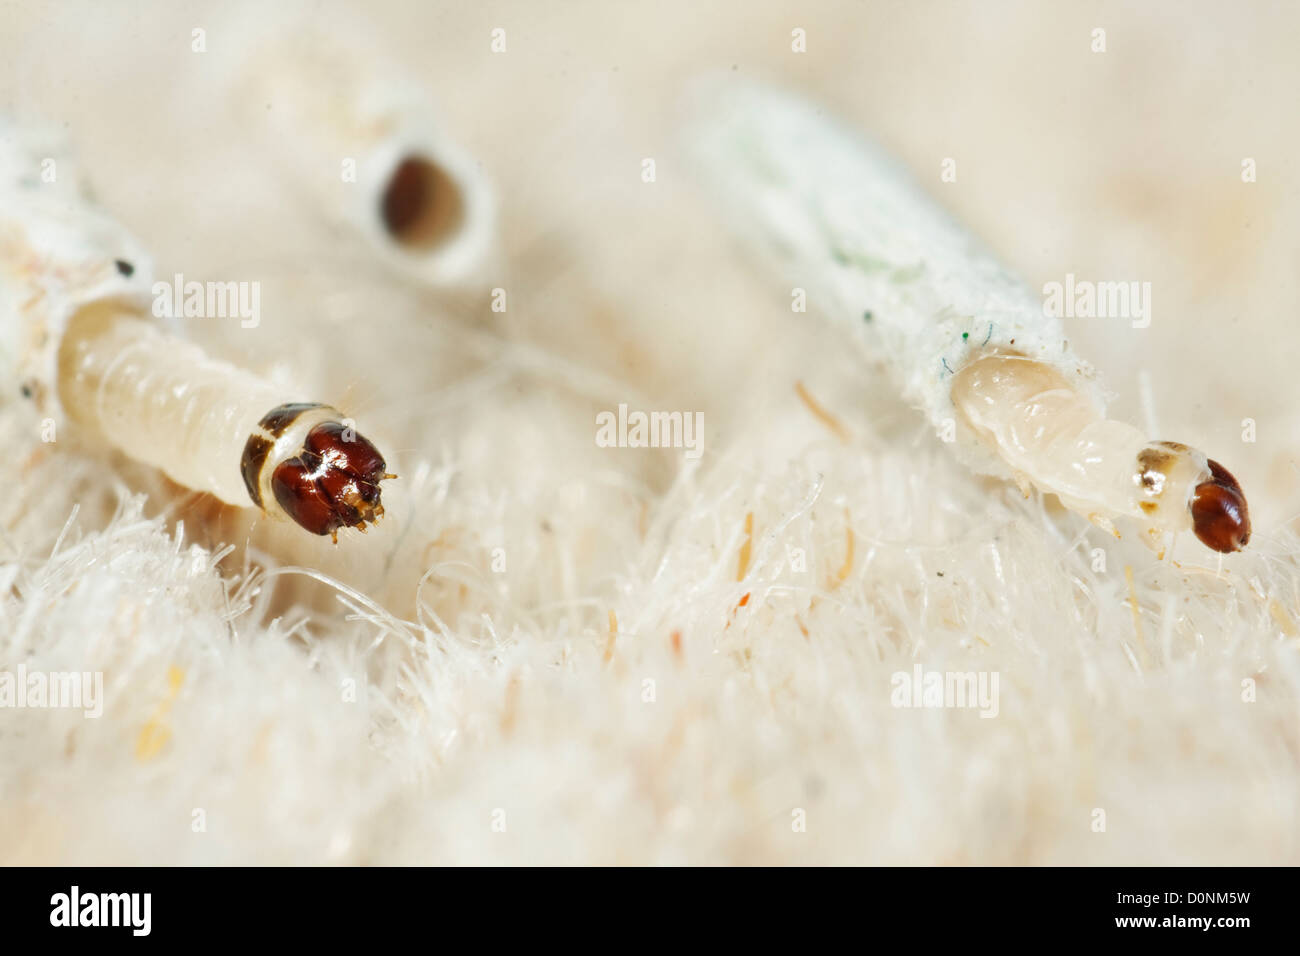 Larvas de la polilla la alfombra fotografías e de resolución - Alamy